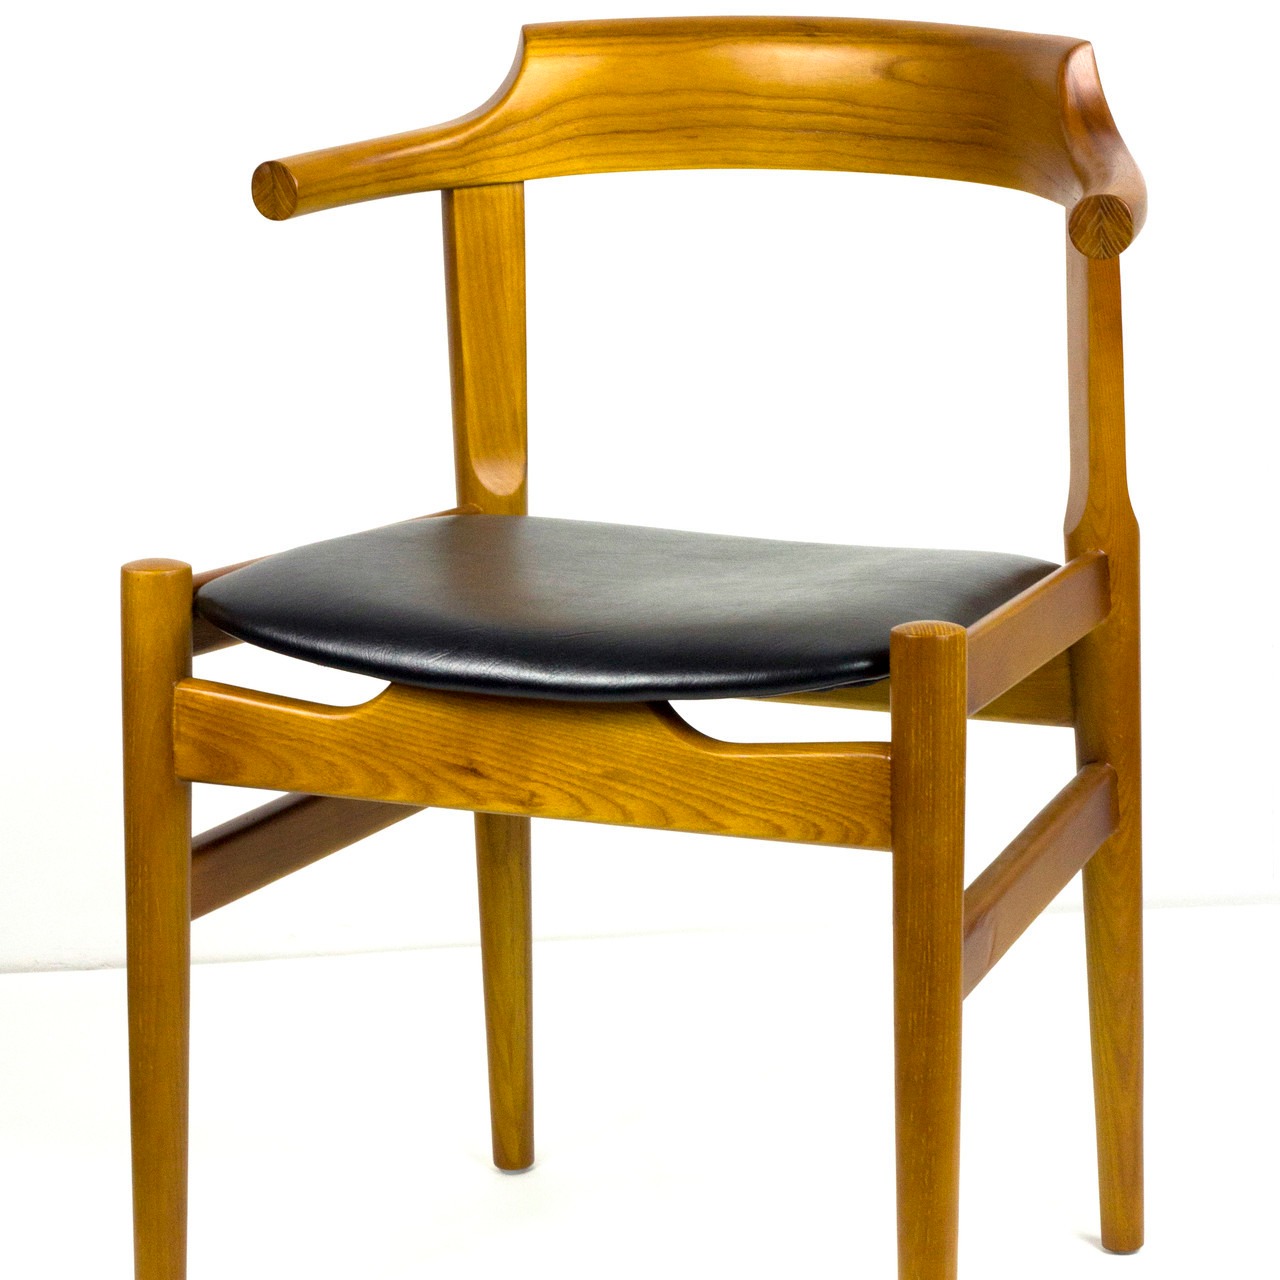 澳门PC塑胶西餐椅 实木椅 铁艺椅子 湘菜馆餐桌椅 中西餐厅椅 餐厅椅加盟店图片